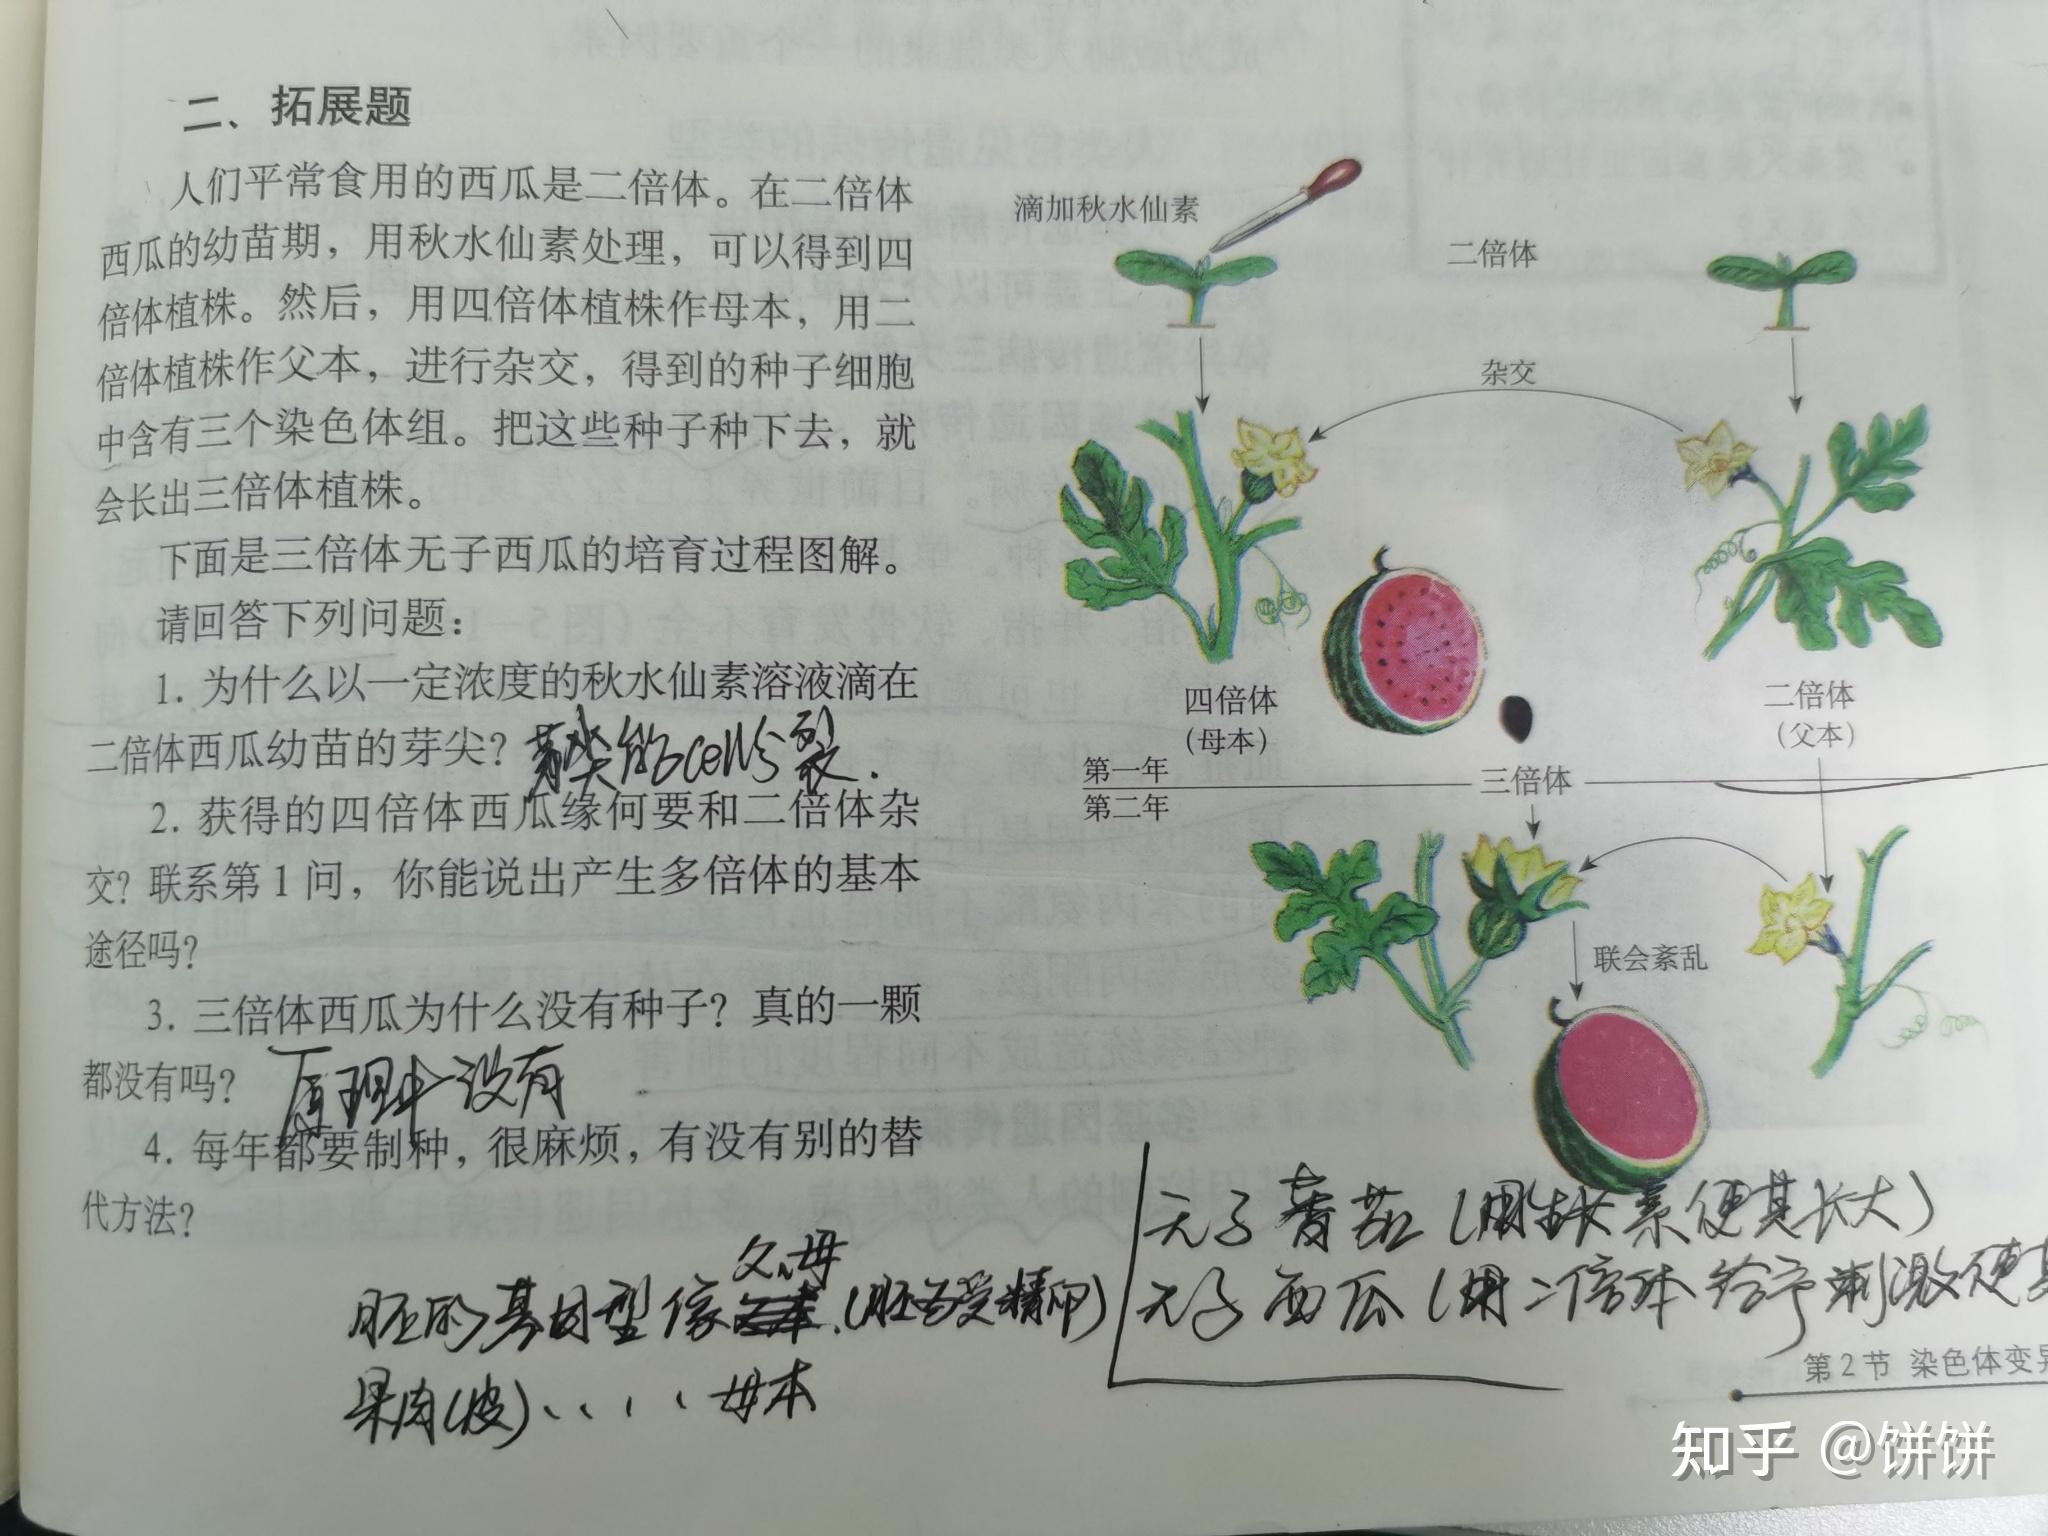 三倍体西瓜是由种子发育而来的吗? 